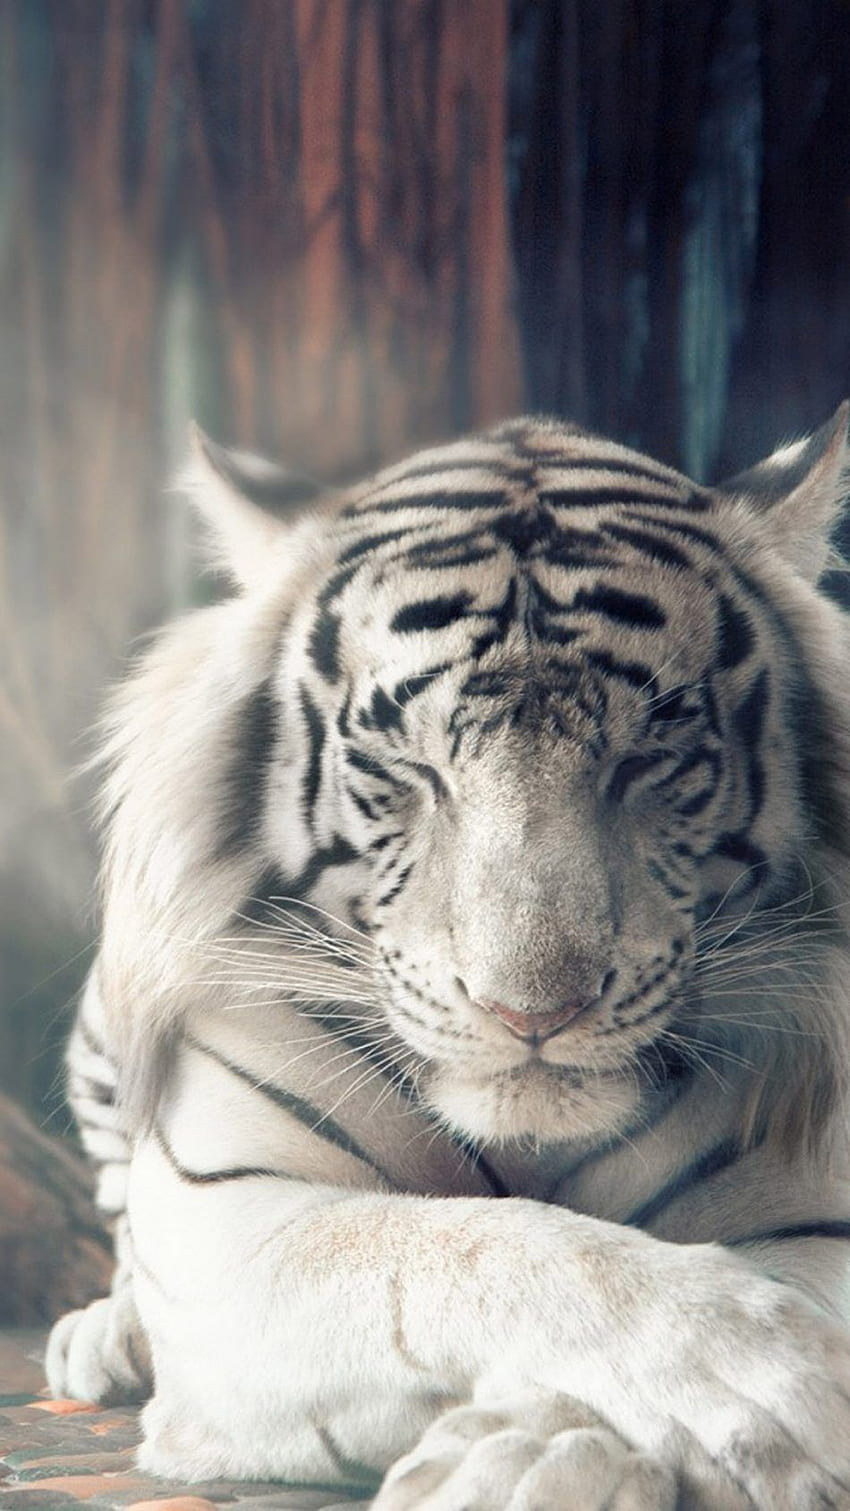 White Bengal Tiger For Mobile. Tiger spirit animal, Animals beautiful, Tiger, Cool White Siberian Tiger HD phone wallpaper